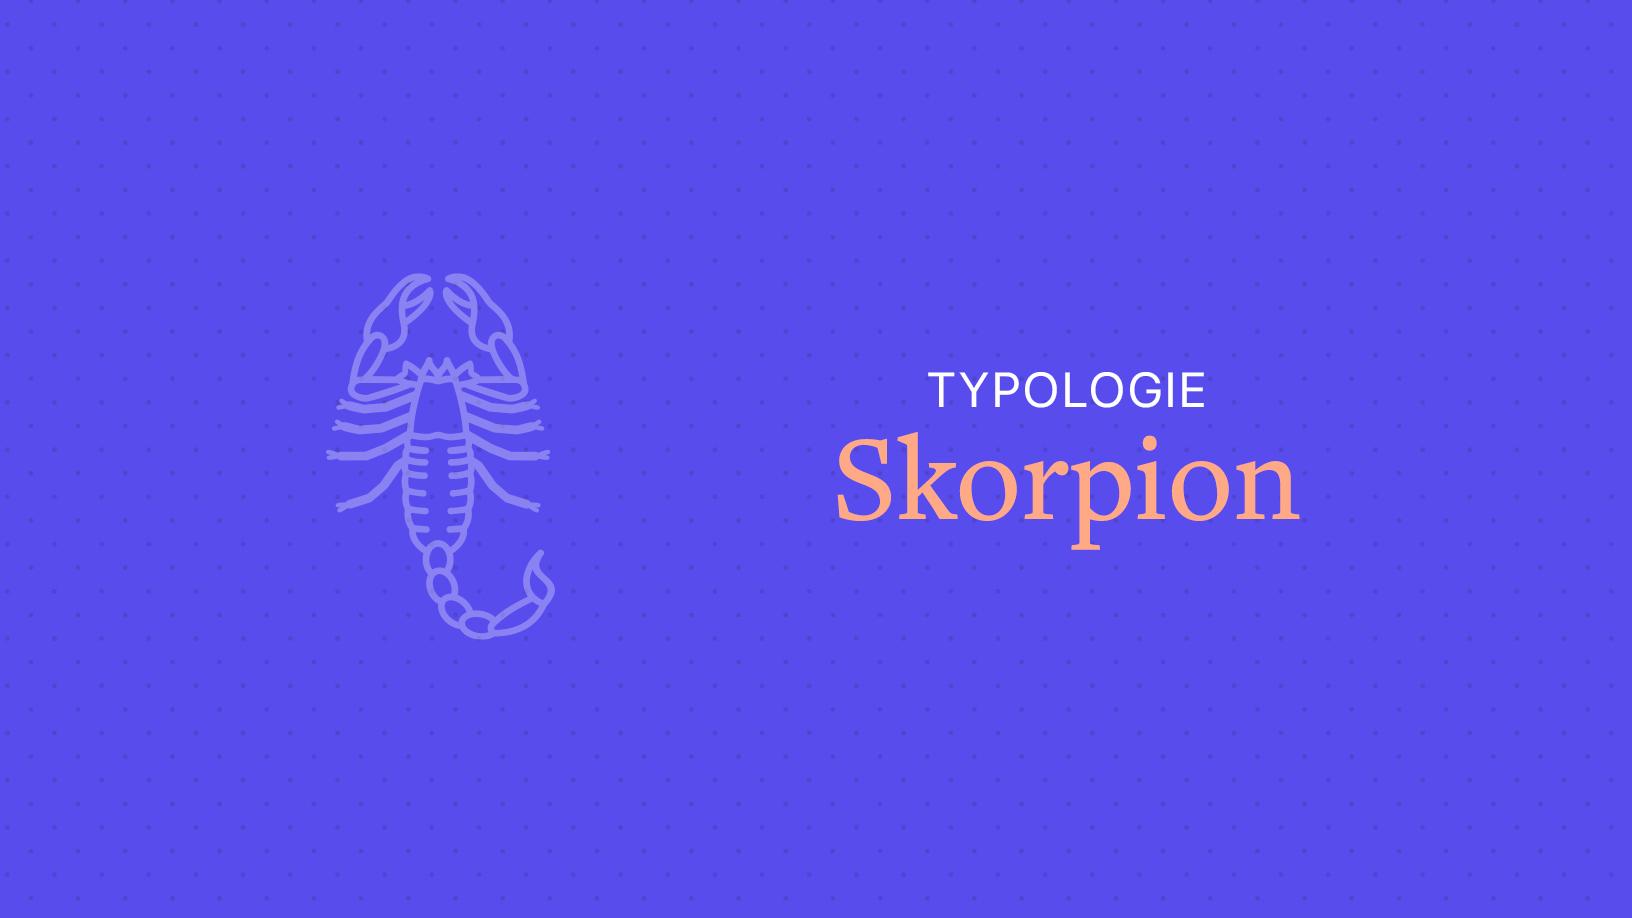 wochenhoroskop skorpion frau single